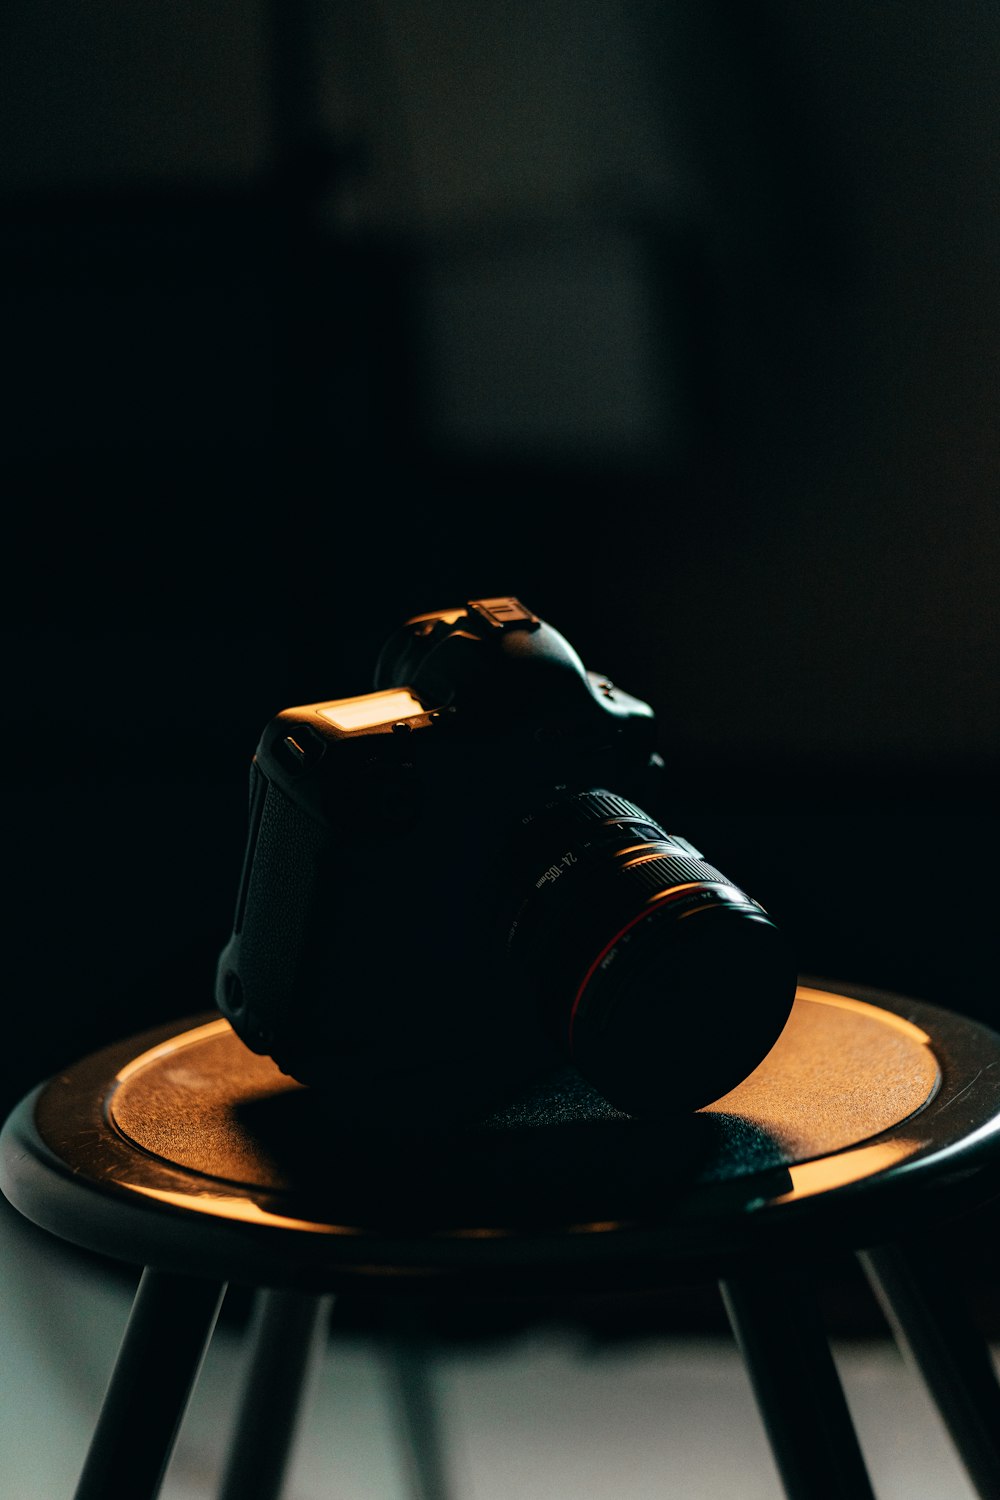 茶色の丸いテーブルに黒いデジタル一眼レフカメラ